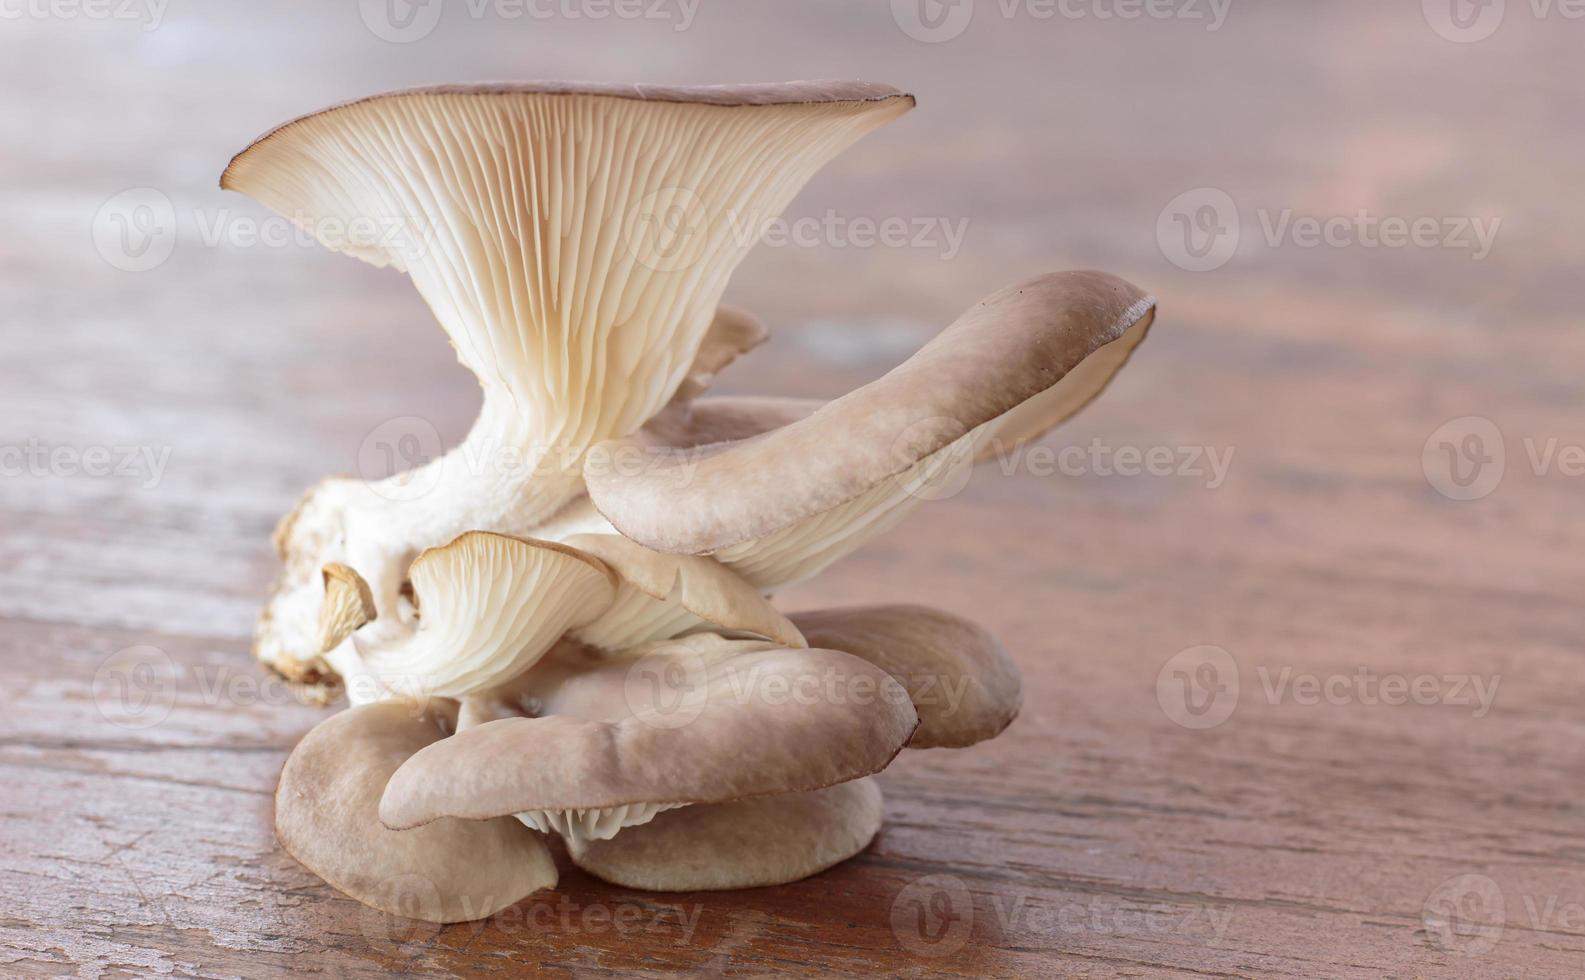 cogumelo ostra, um fungo comestível esparso com uma tampa em forma de ostra marrom-acinzentada e um caule muito curto ou ausente. cresce na madeira das árvores de folha larga e apodrece. foto